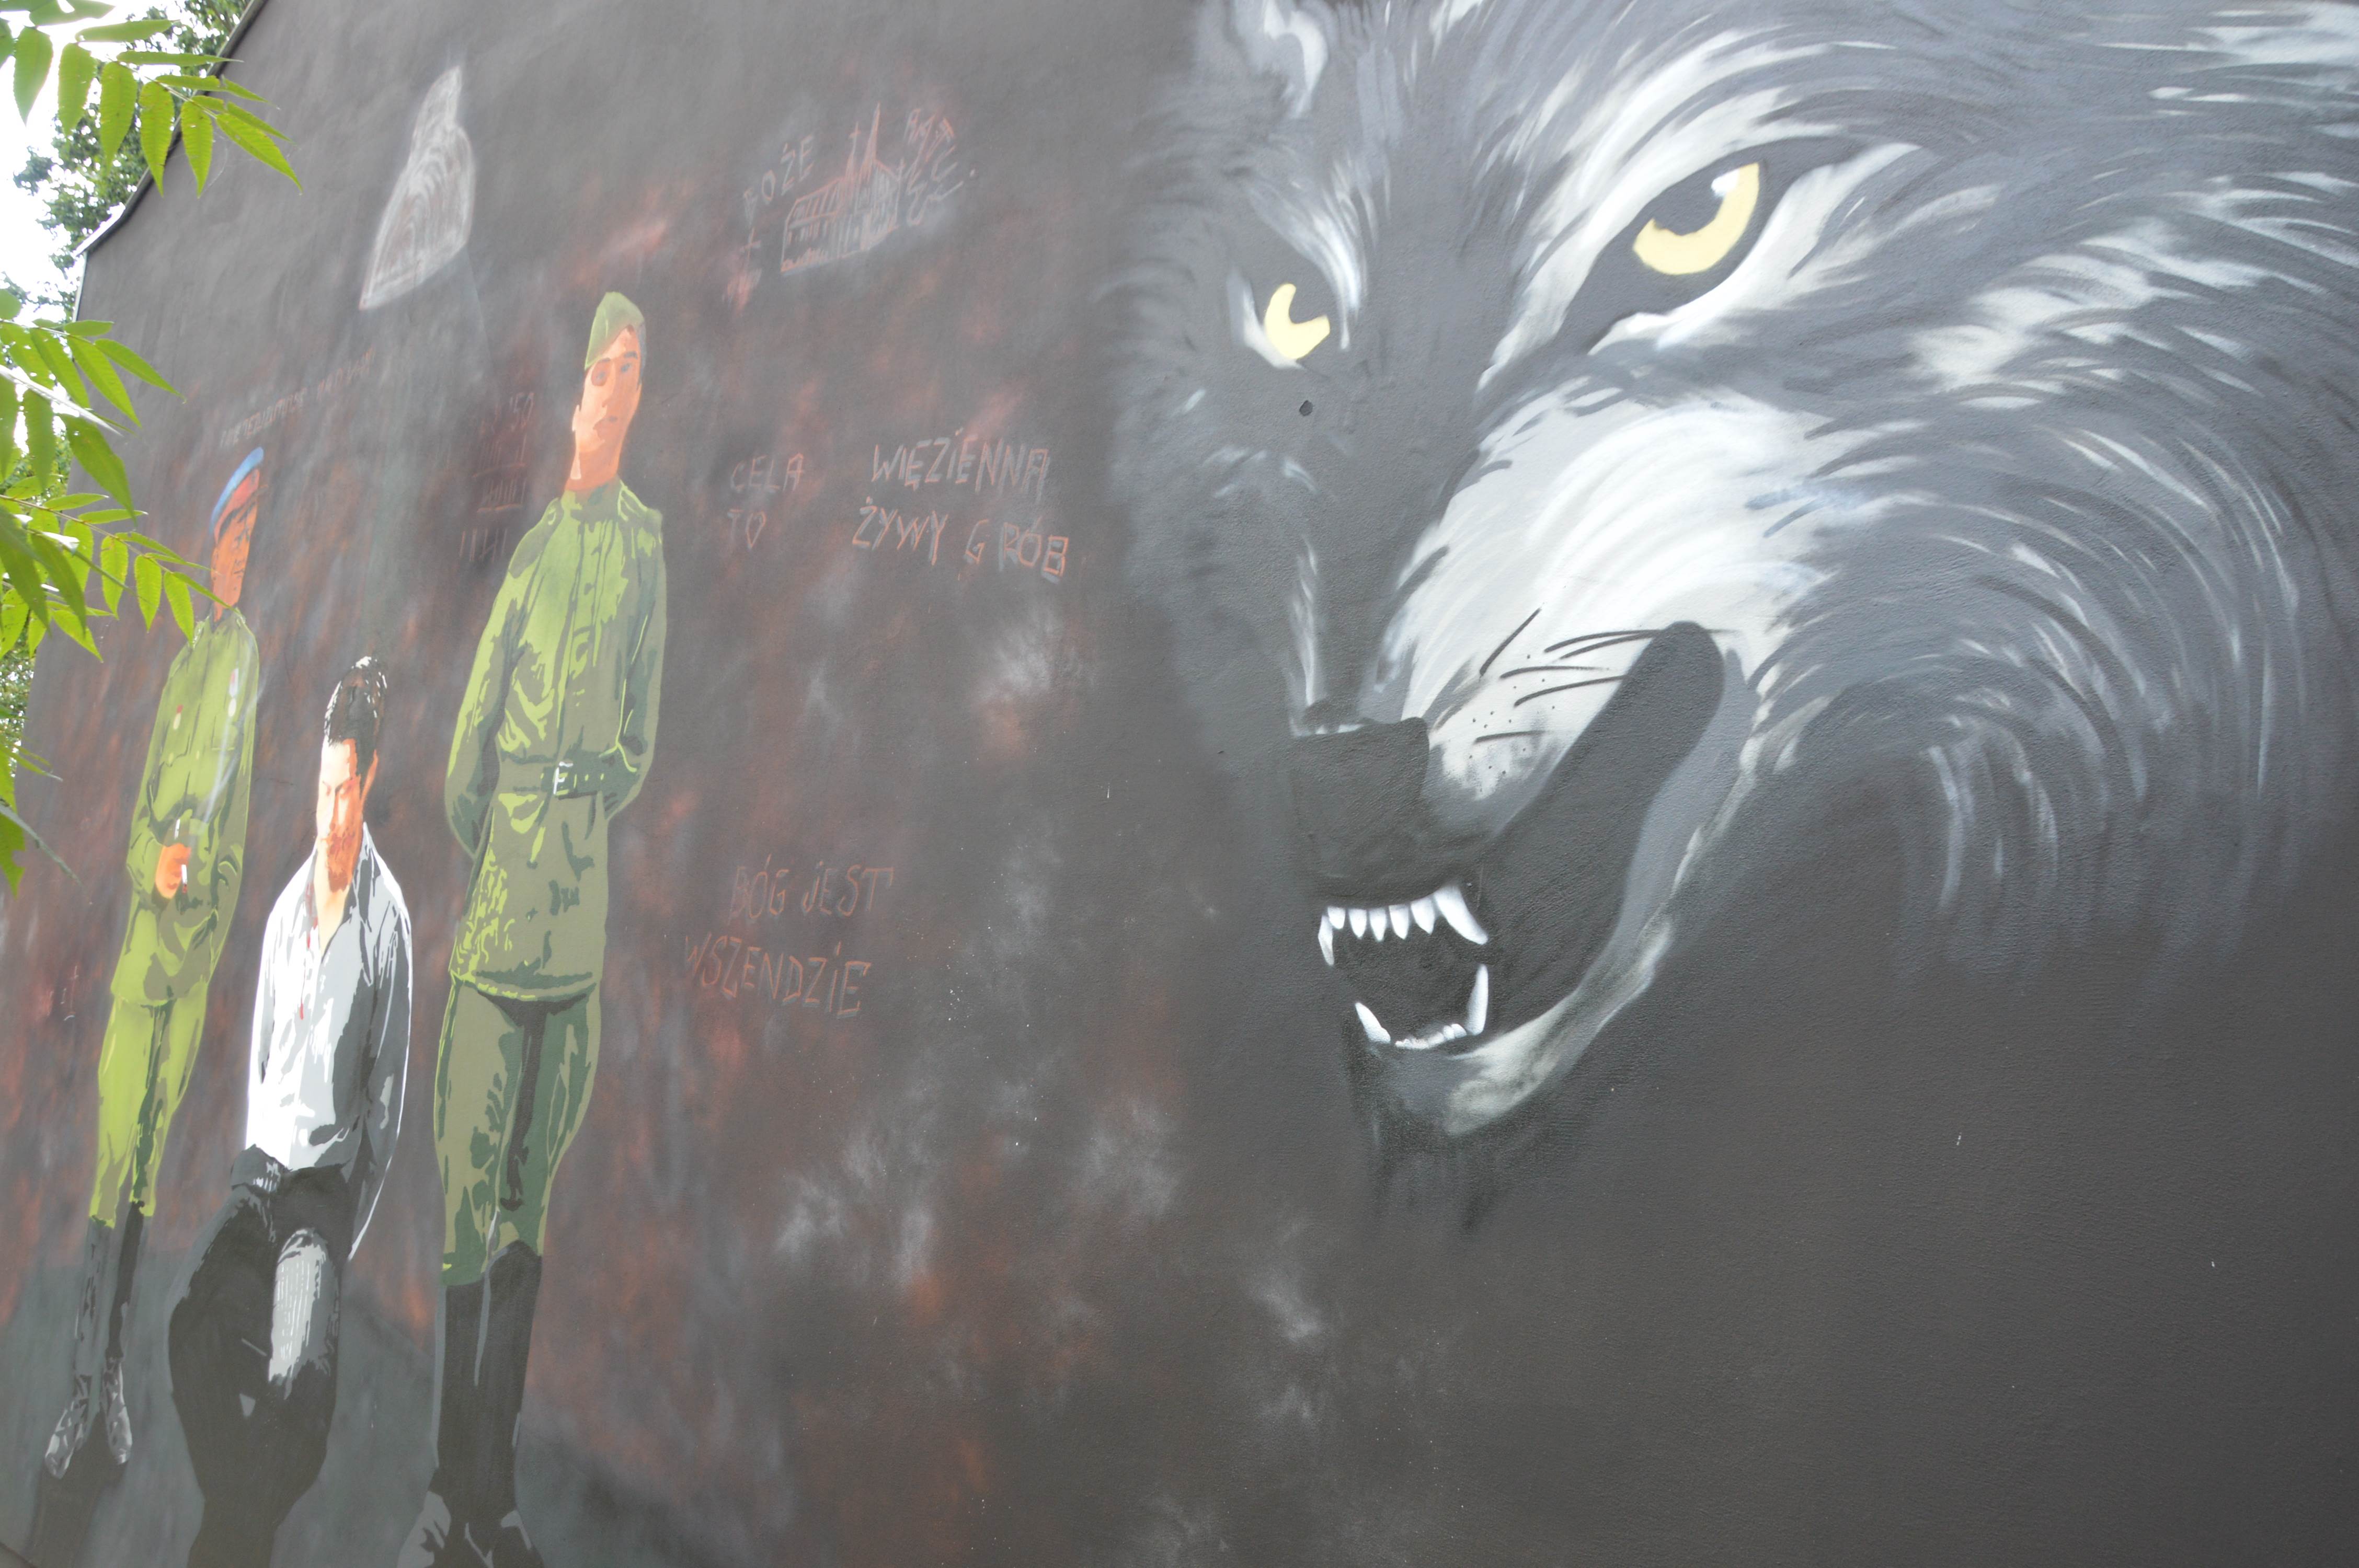 Zaproszenie  na odsłonięcie patriotycznego muralu w Radzyniu - Zdjęcie główne